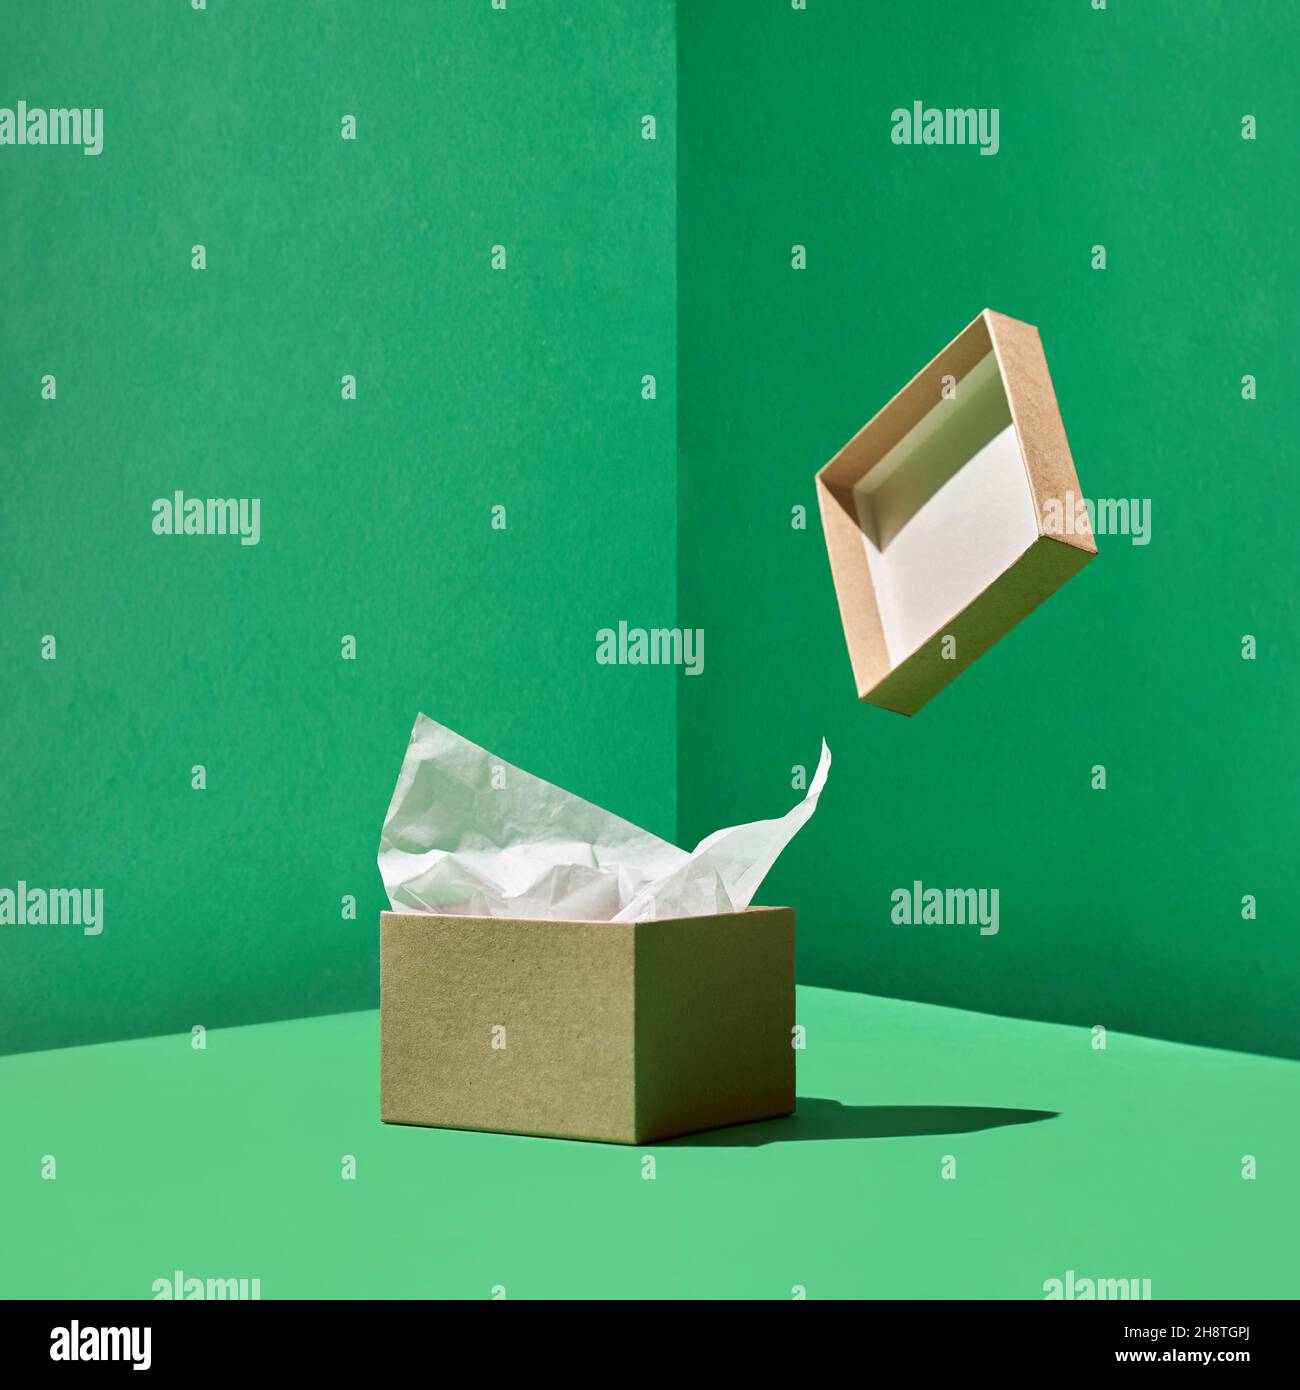 Bastelkiste mit Packpapier innen und levitierender Kiste Abdeckung auf grüner Rückseite Stockfoto